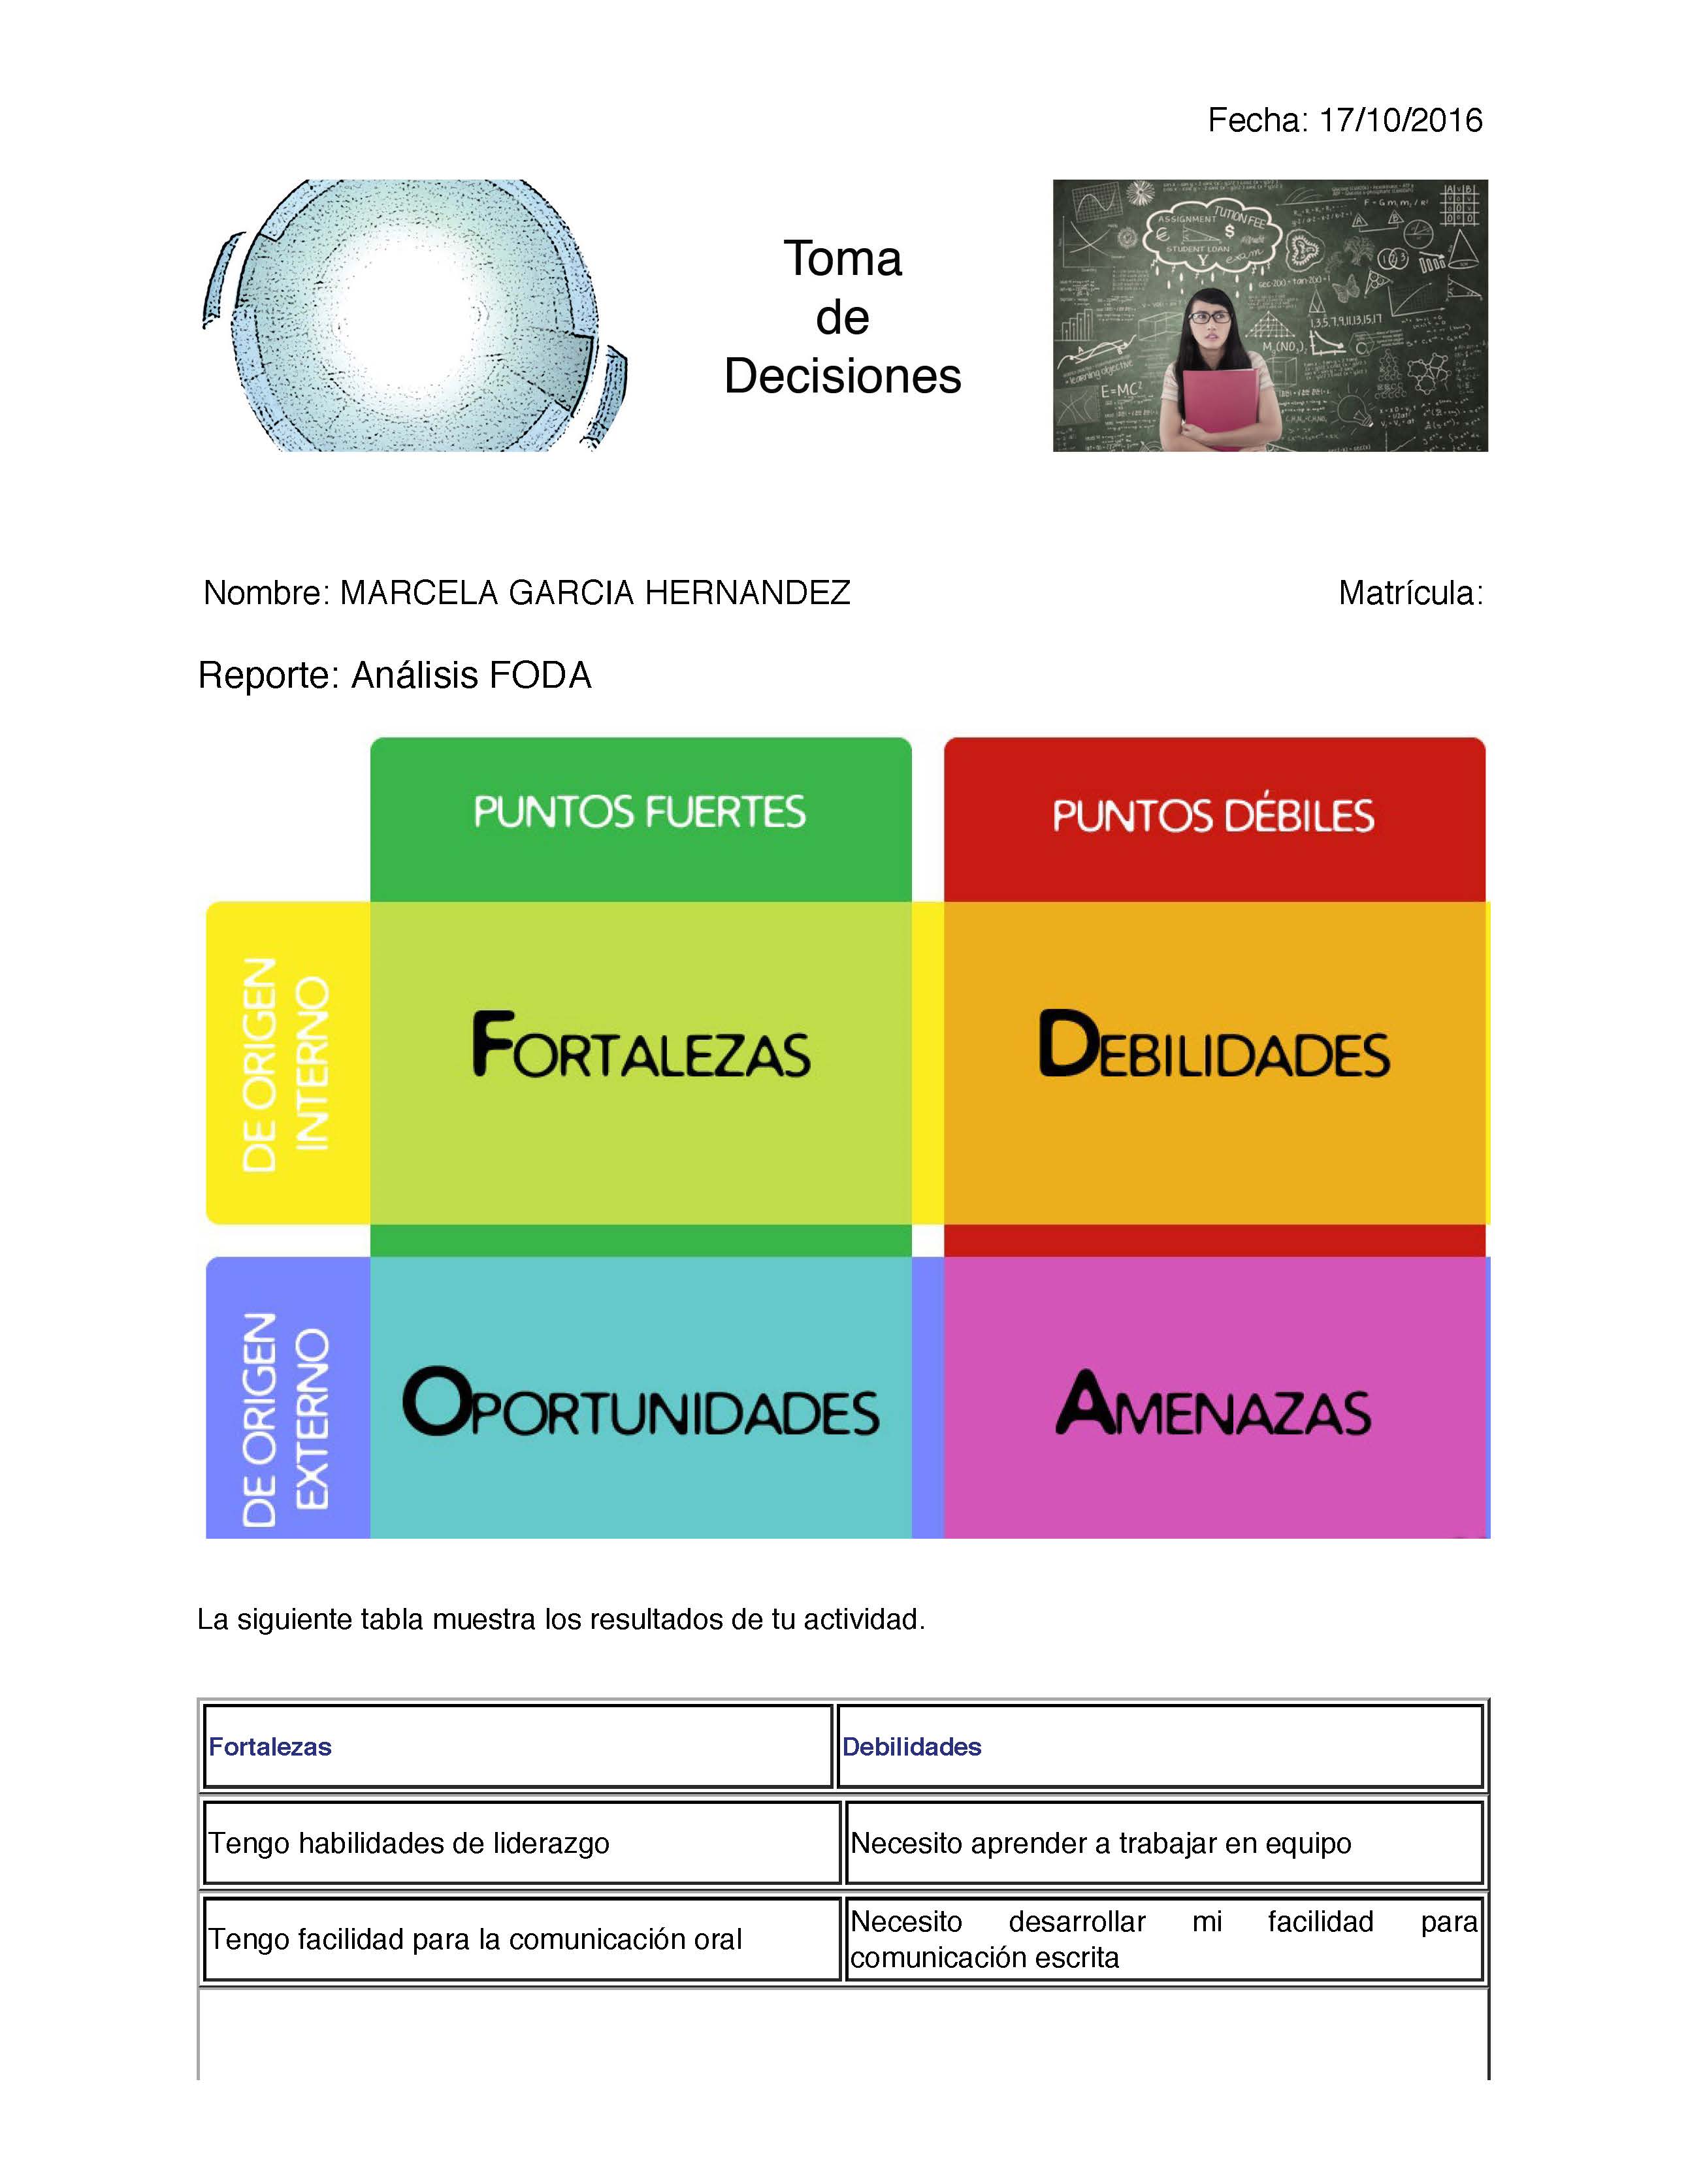 plataforma de desarrollo personal, desarrollo personal México, reportes digitales, portafolio digital, autoconocimiento, toma de decisiones